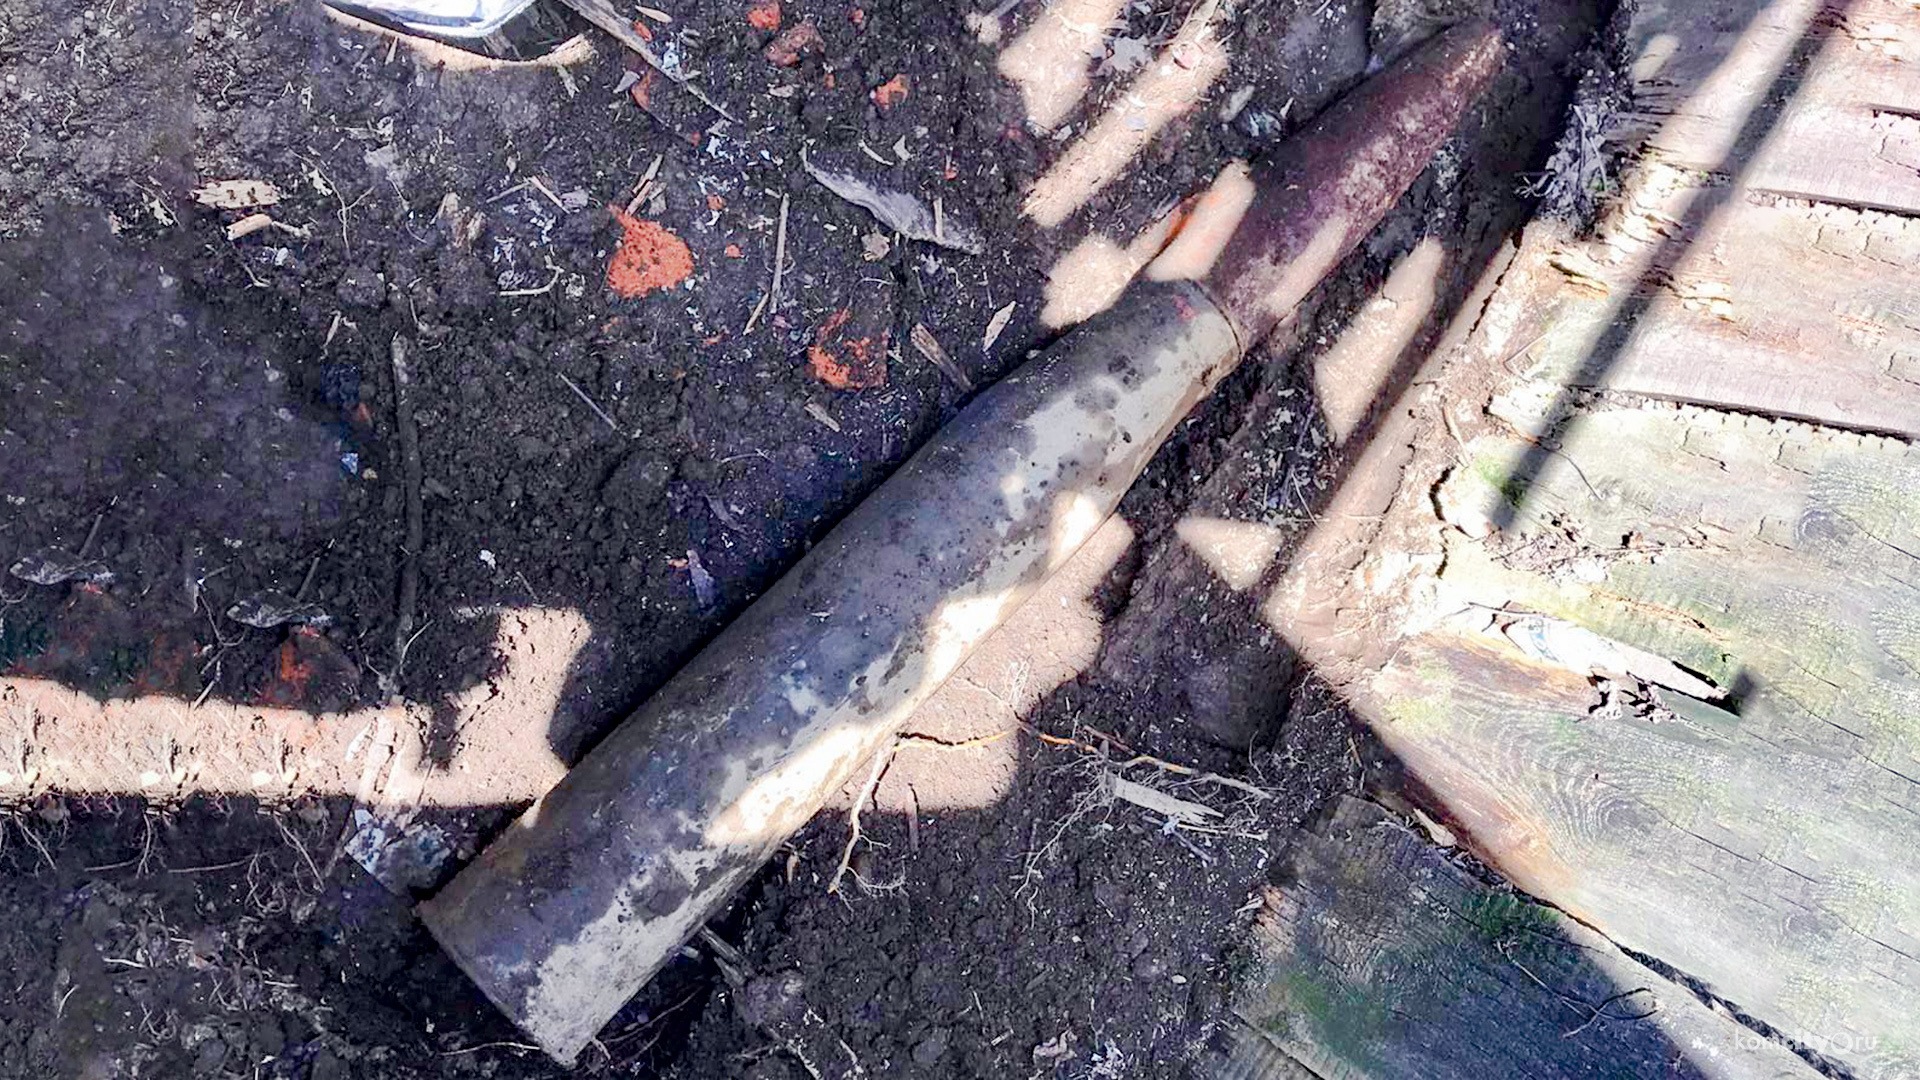 Сапёры определили тип боеприпаса, найденного в огороде на Рылеева